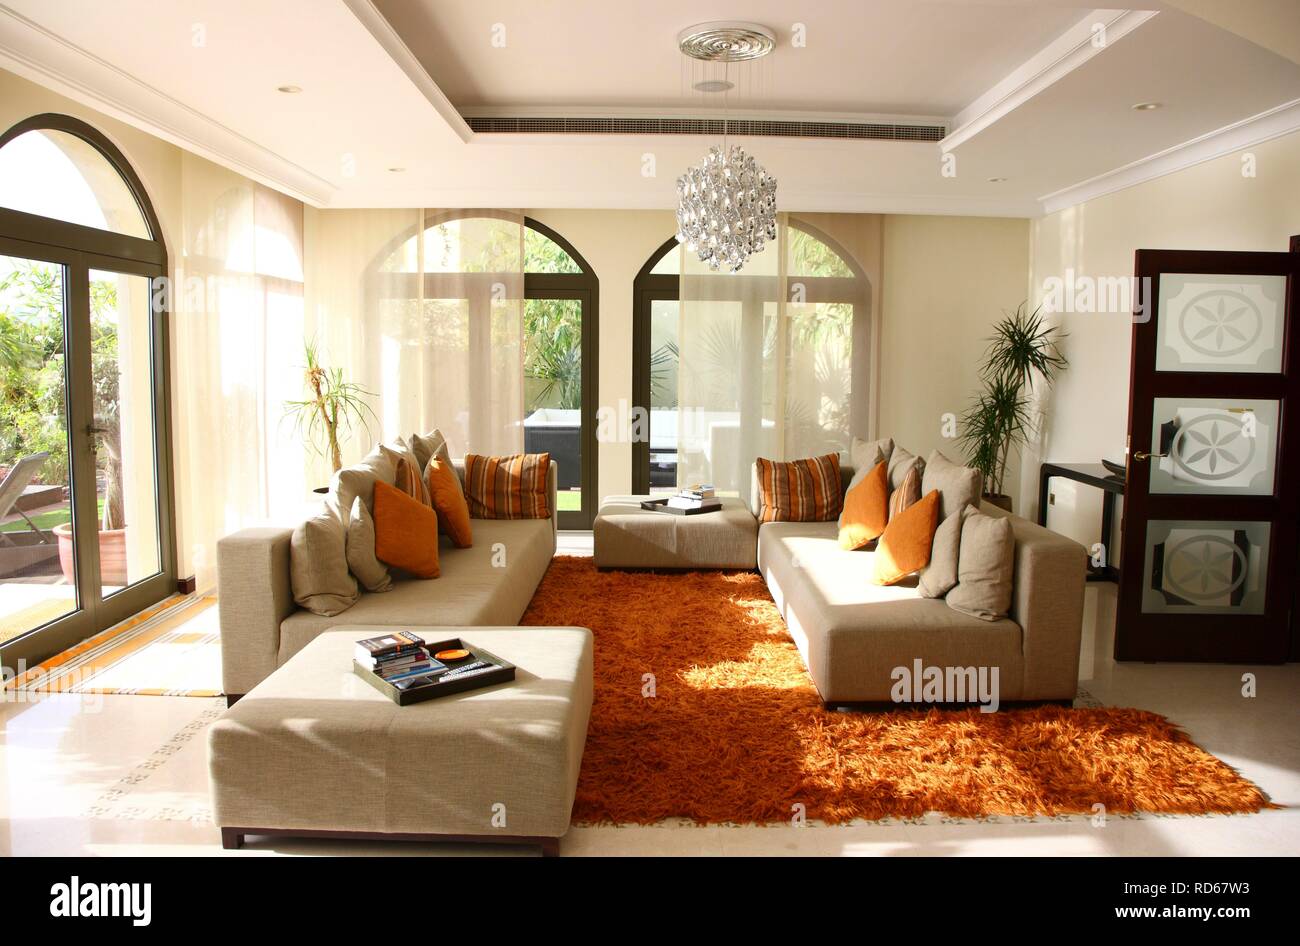 Villa privata sul Palm Jumeirah, disponibile anche per affitto come una vacanza di lusso home, Dubai, Emirati Arabi Uniti, Medio Oriente Foto Stock